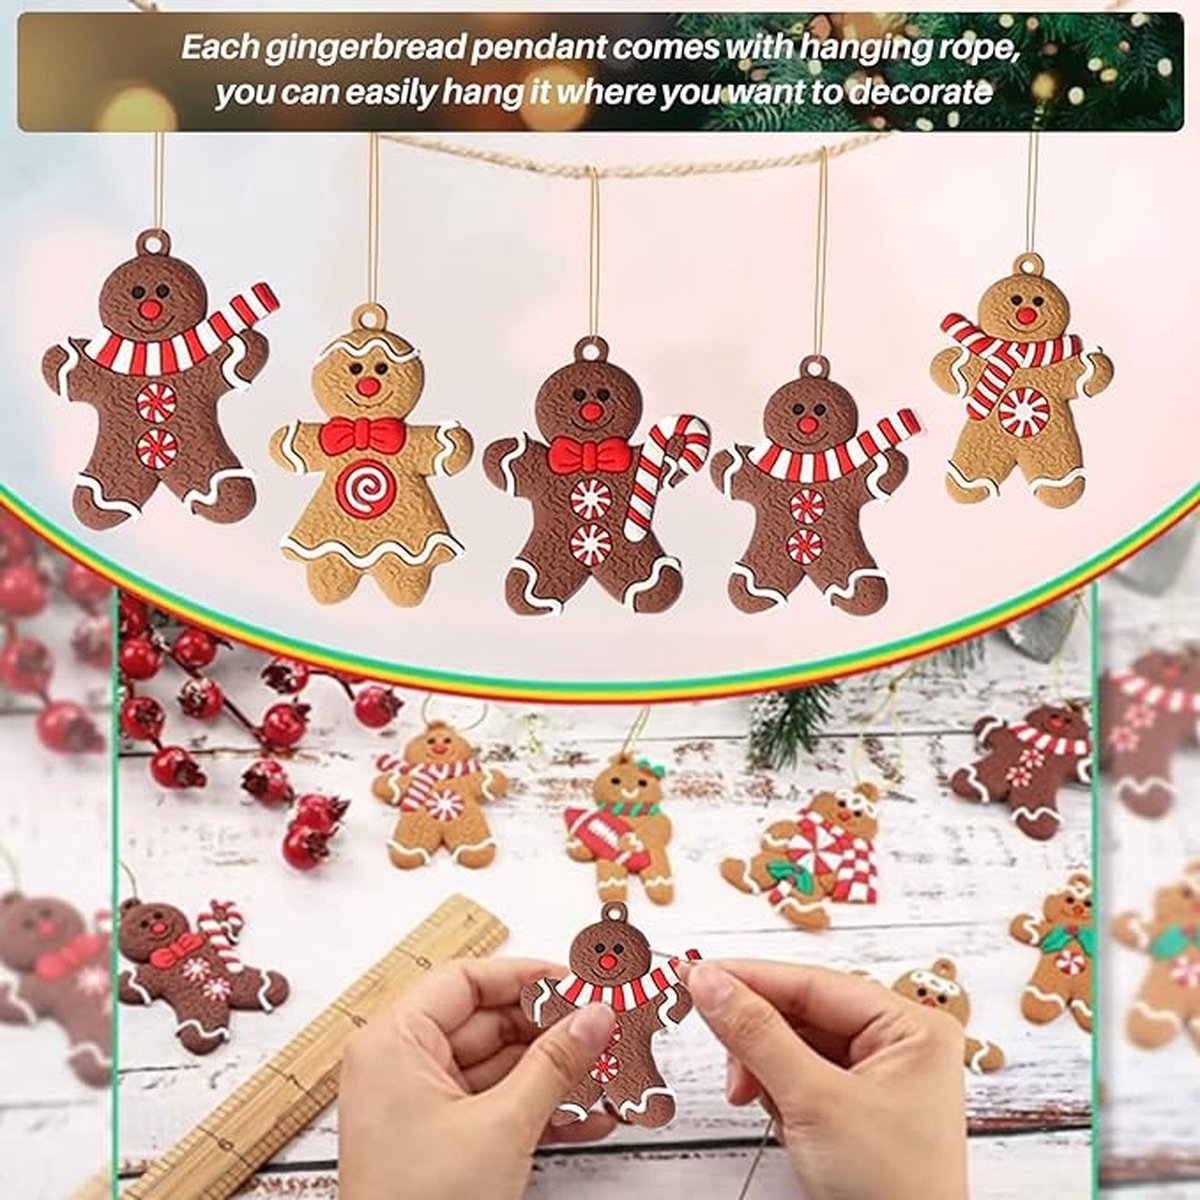 Peperkoekenman kerstboomversiering, 12 stuks traditionele peperkoekman-hanger, kerstboomversiering, peperkoekmannetje decoratie